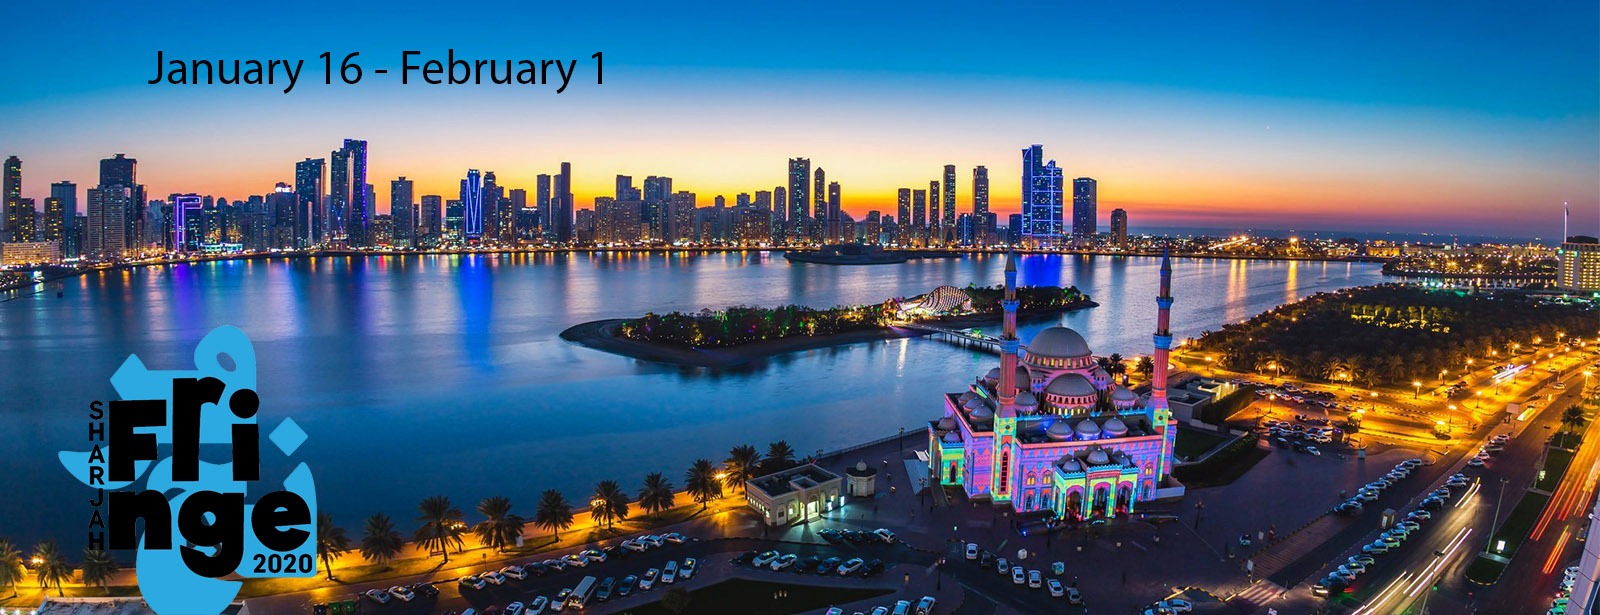 Sharjah Fringe Festival 2020 - Coming Soon in UAE